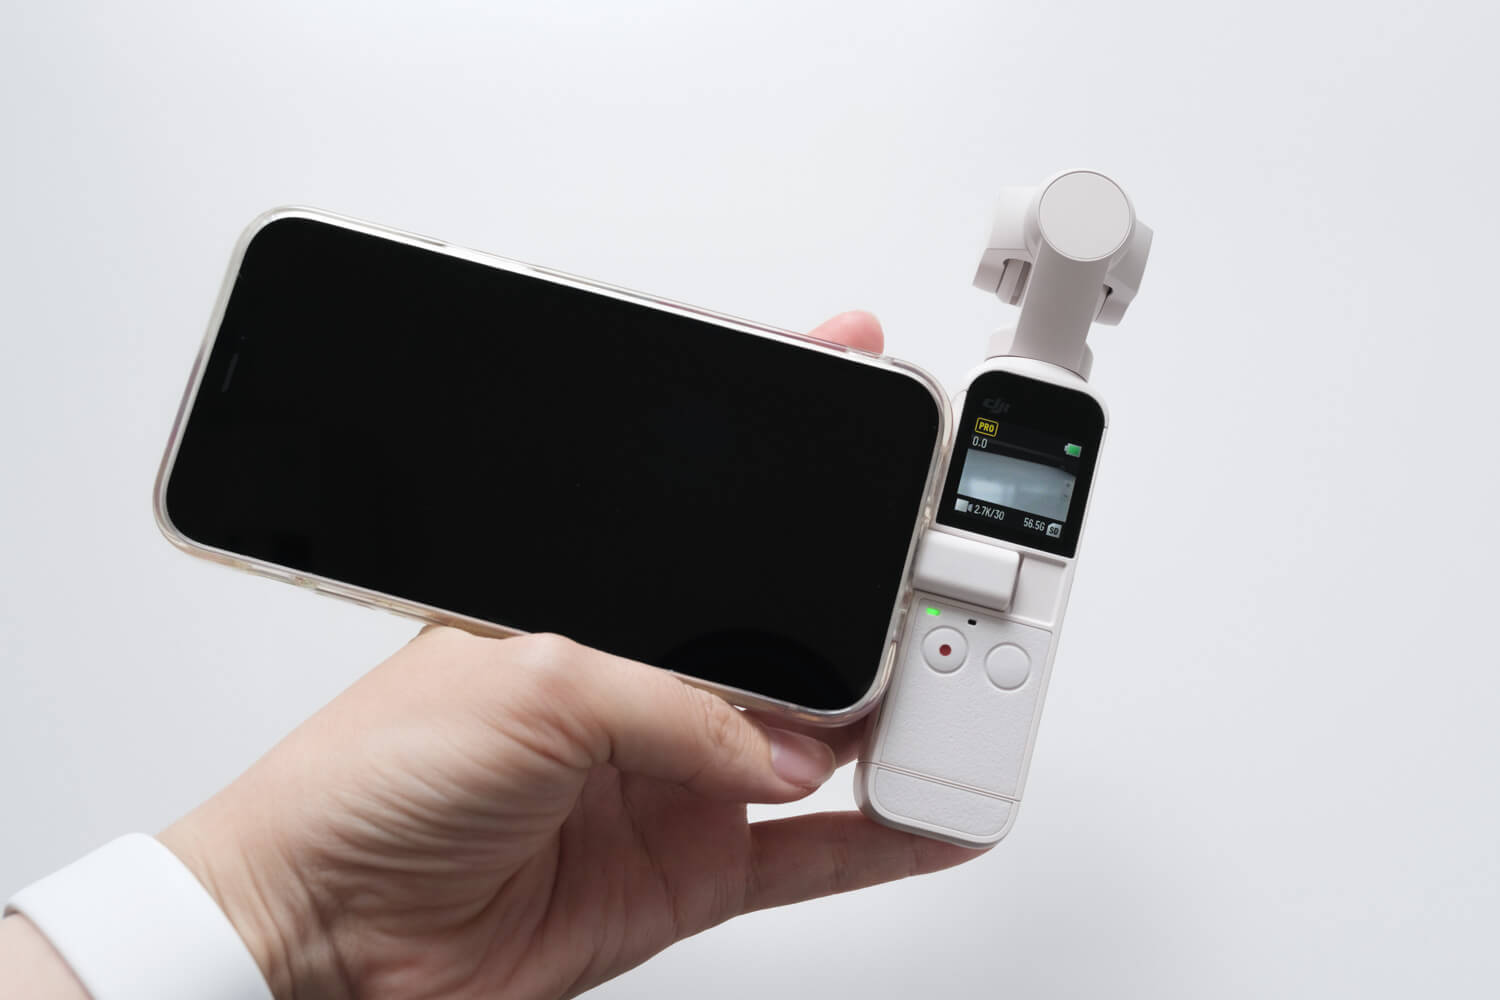 DJI Pocket 2 サンセットホワイトにiPhone12 miniを接続したところ